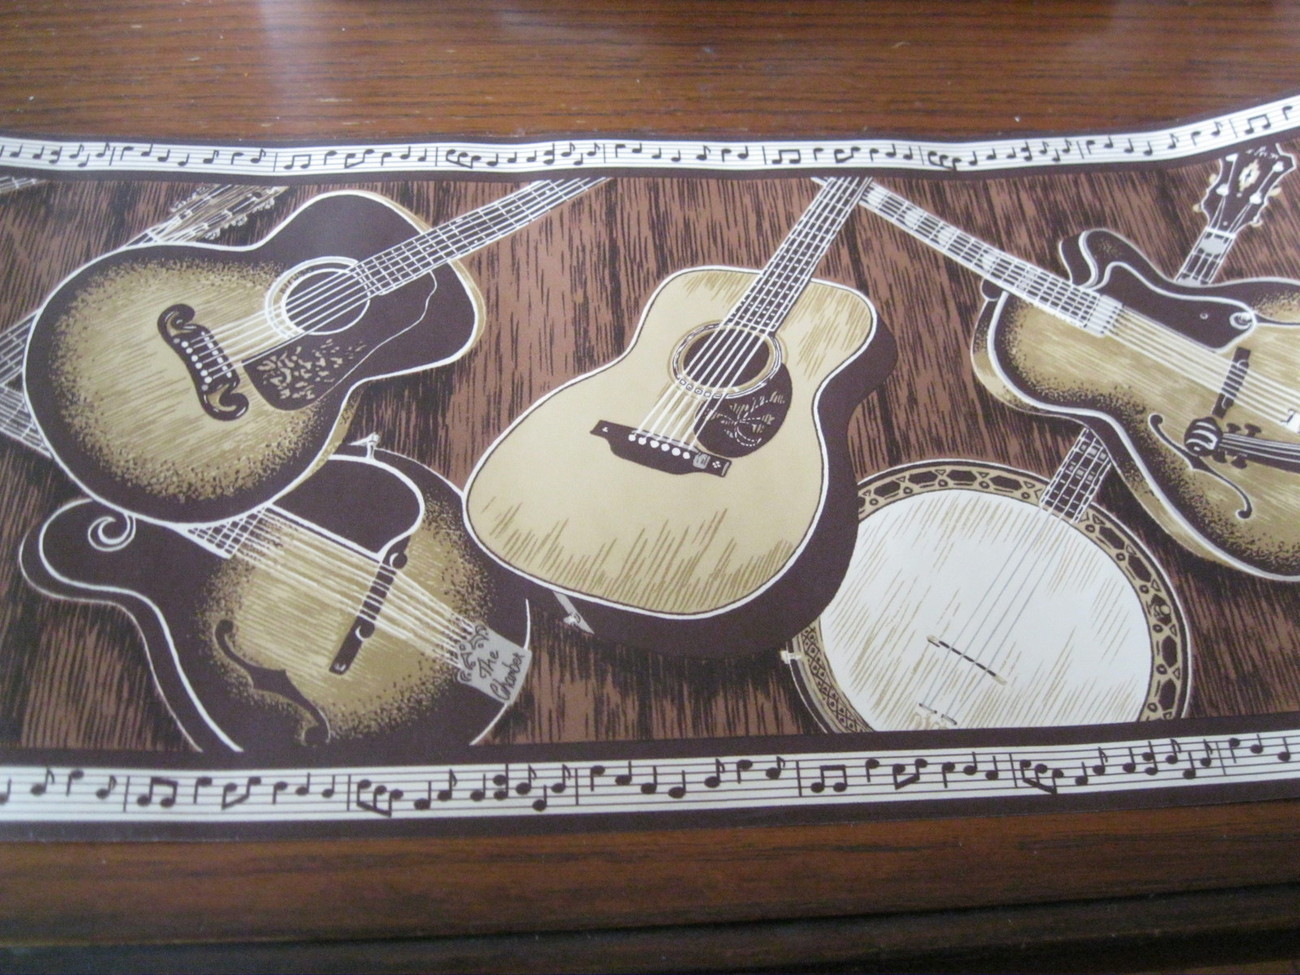 Banjo Instruments Musical Notes Wall Wallpaper Border 85321b Brown